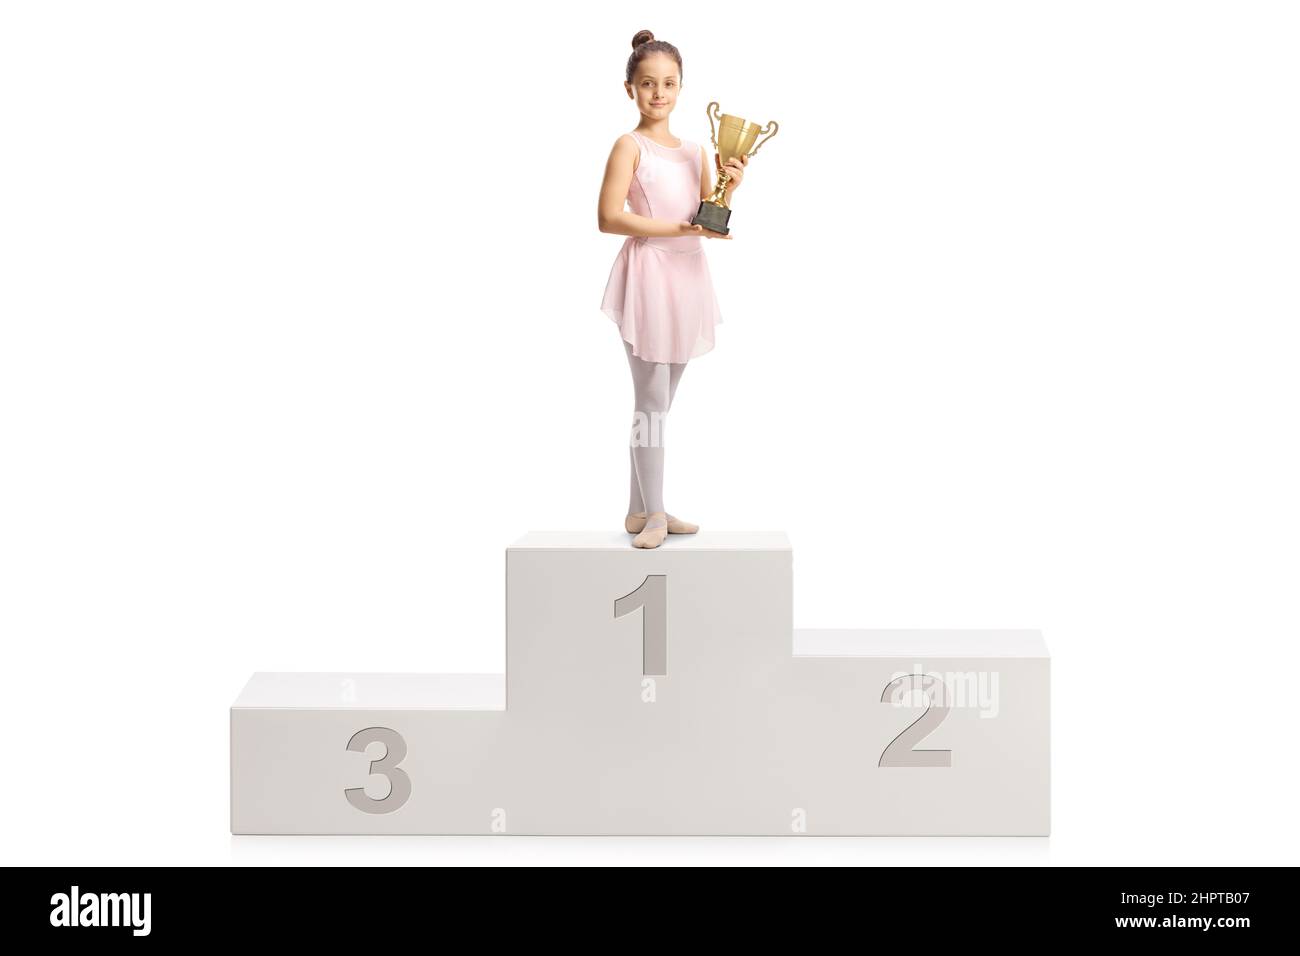 Ballerina in einem rosa Kleid mit einem goldenen Pokal auf einem Siegerpodium auf weißem Hintergrund Stockfoto